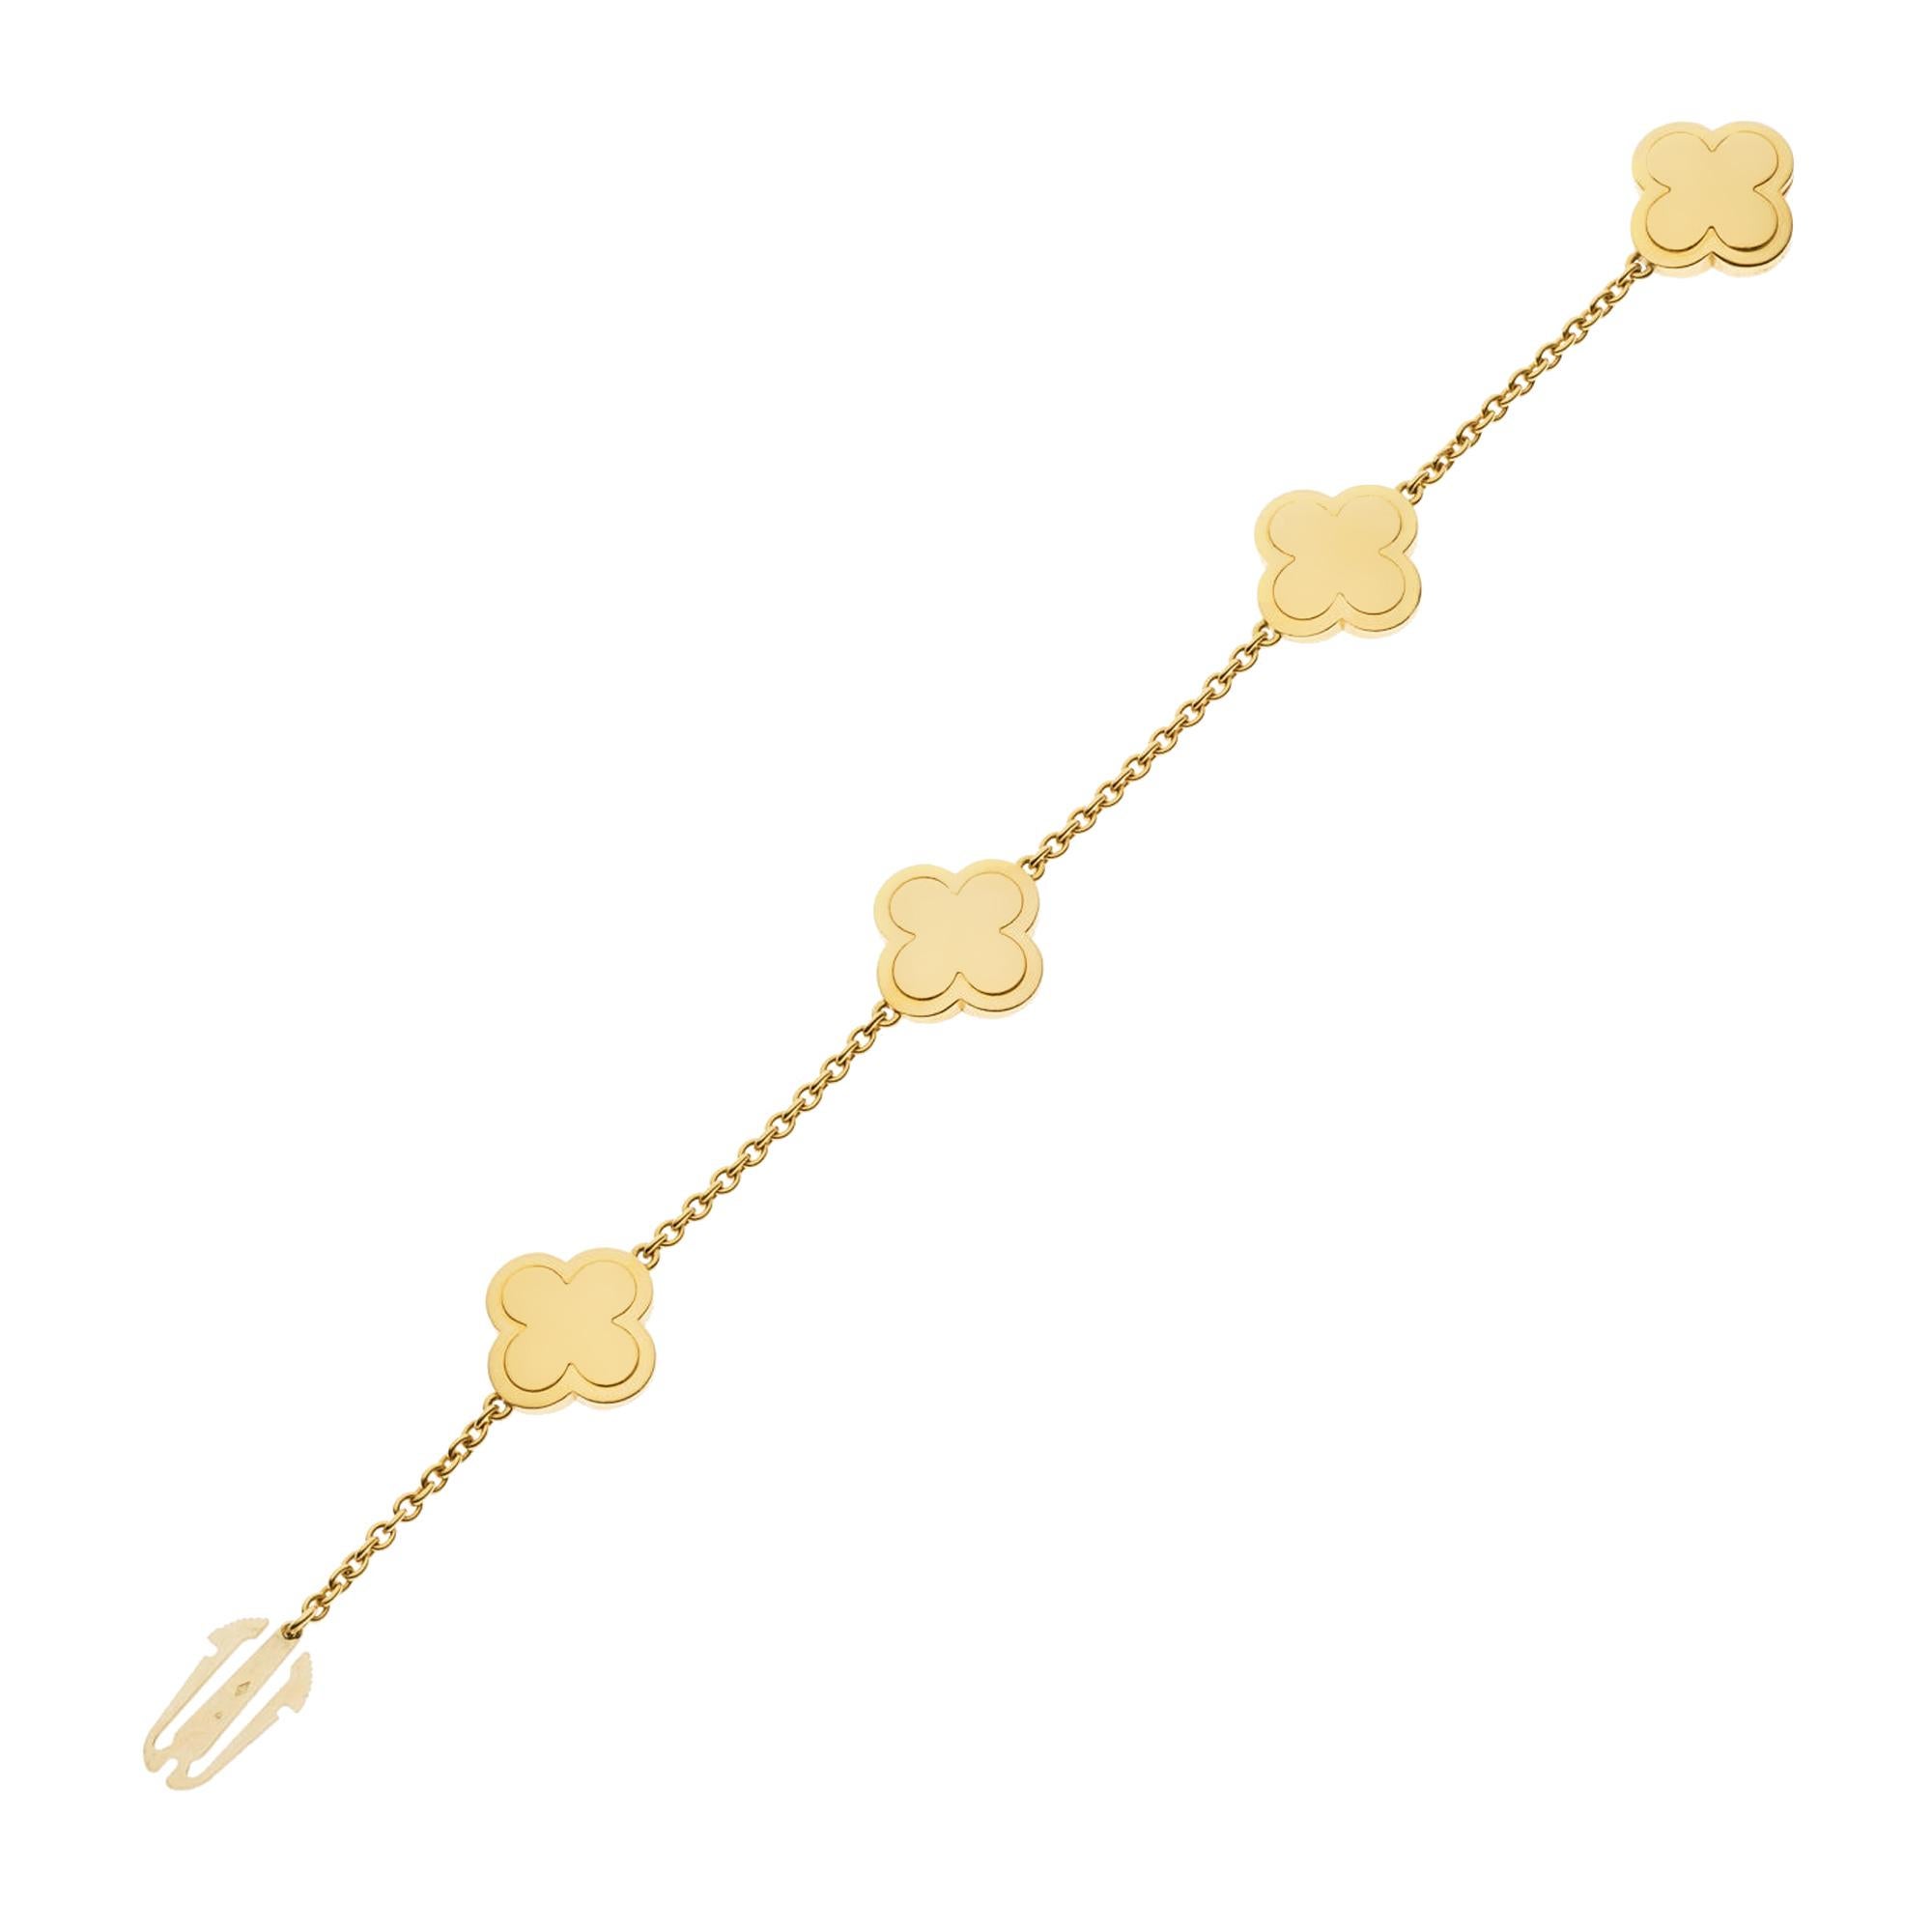 Le bracelet en or jaune Van Cleef & Arpels Pure Alhambra Diamond est l'incarnation de l'élégance luxueuse et du design intemporel. Cette pièce exquise fait partie de la célèbre collection Pure Alhambra, qui s'inspire du charme mauresque du palais de